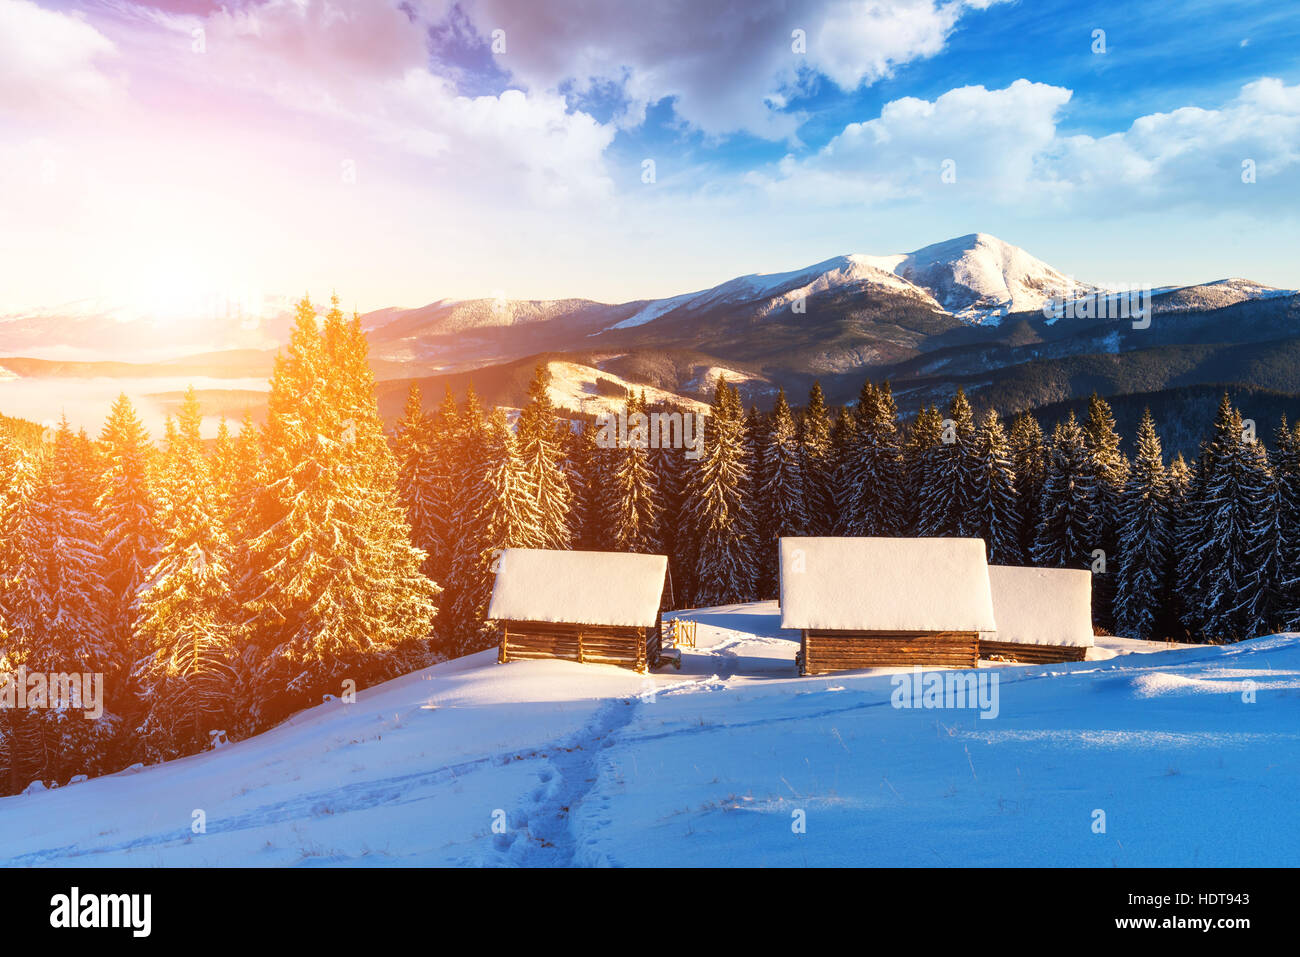 Soirée fantastique paysage rose brillant par la lumière du soleil. Scène hivernale spectaculaire avec snowy chambre. Carpates, l'Ukraine, l'Europe. Banque D'Images